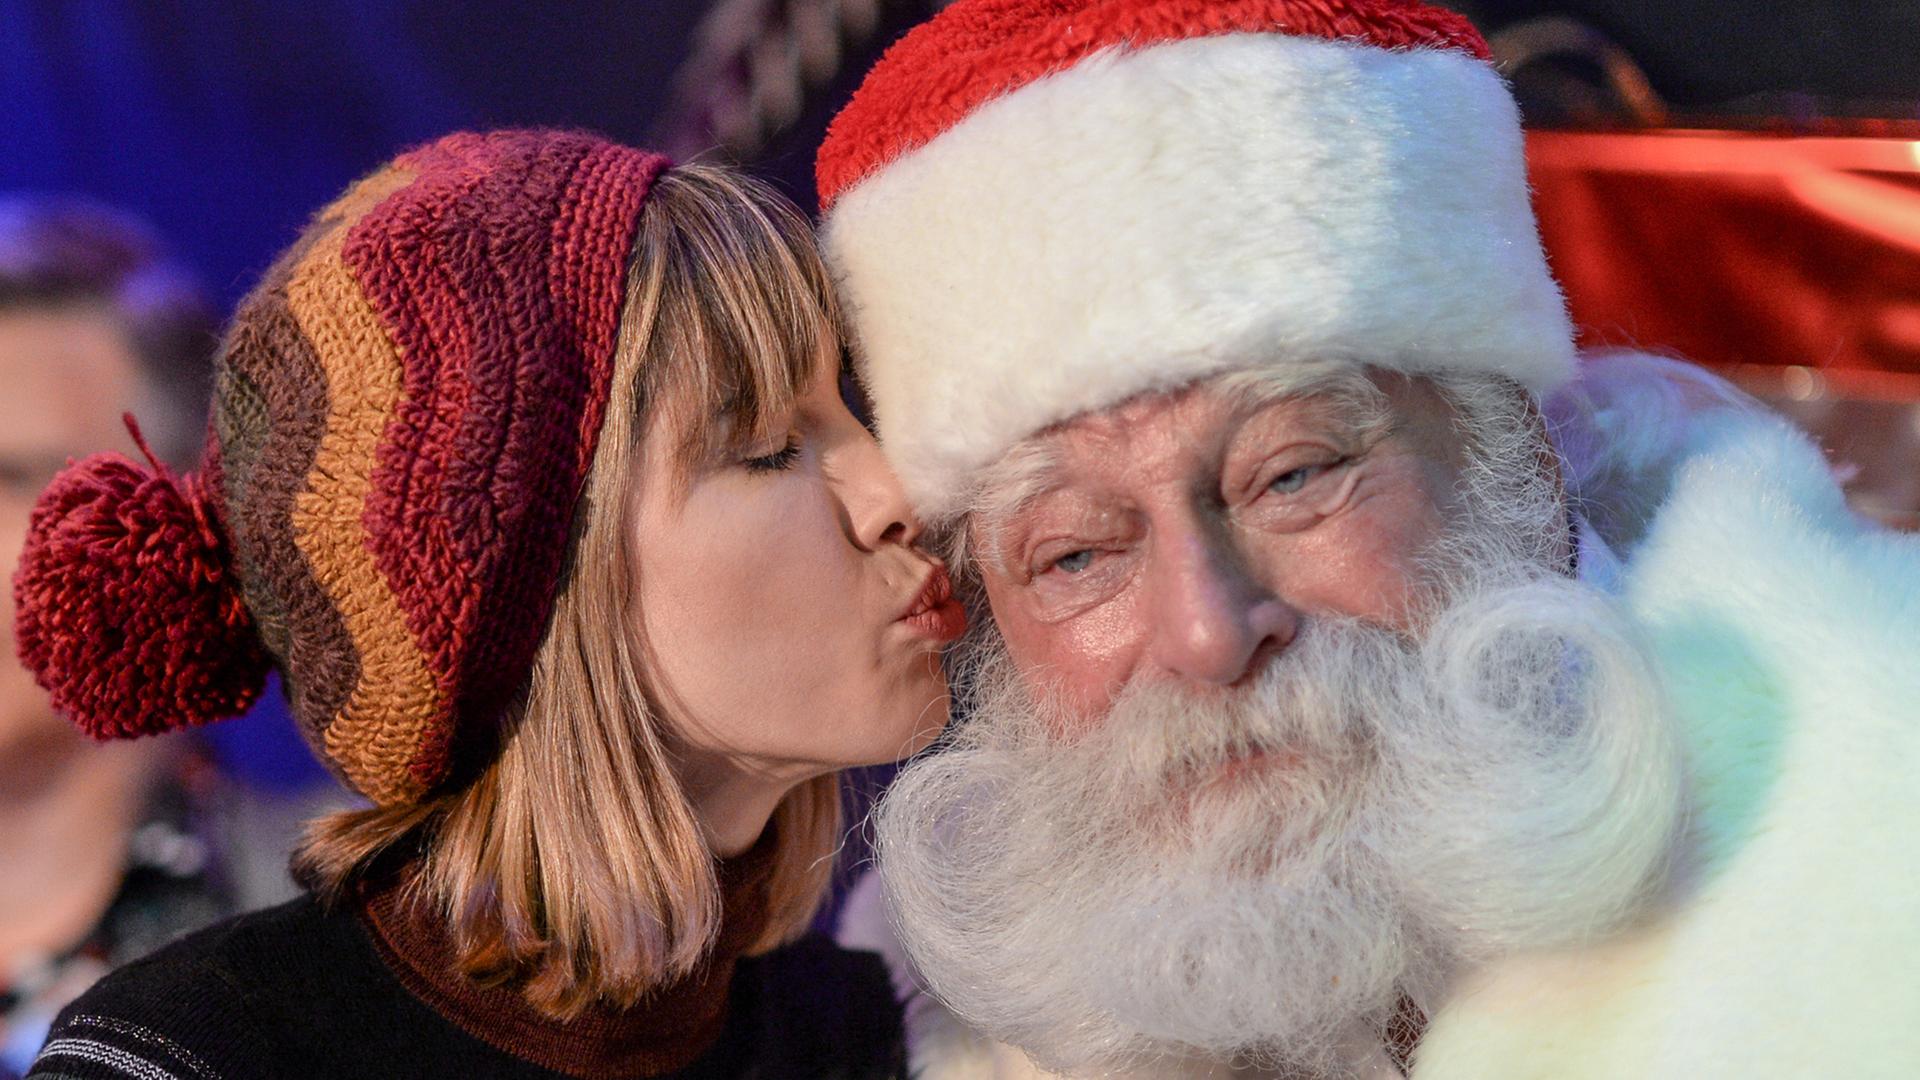 Schauspielerin Isabell Horn küsst bei der Eröffnung des ersten VIP-Weihnachtsmarktes im Wachsfigurenkabinett Madame Tussauds Berlin am 29.11.2017 den Kult-Weihnachtsmann Peter Georgi.